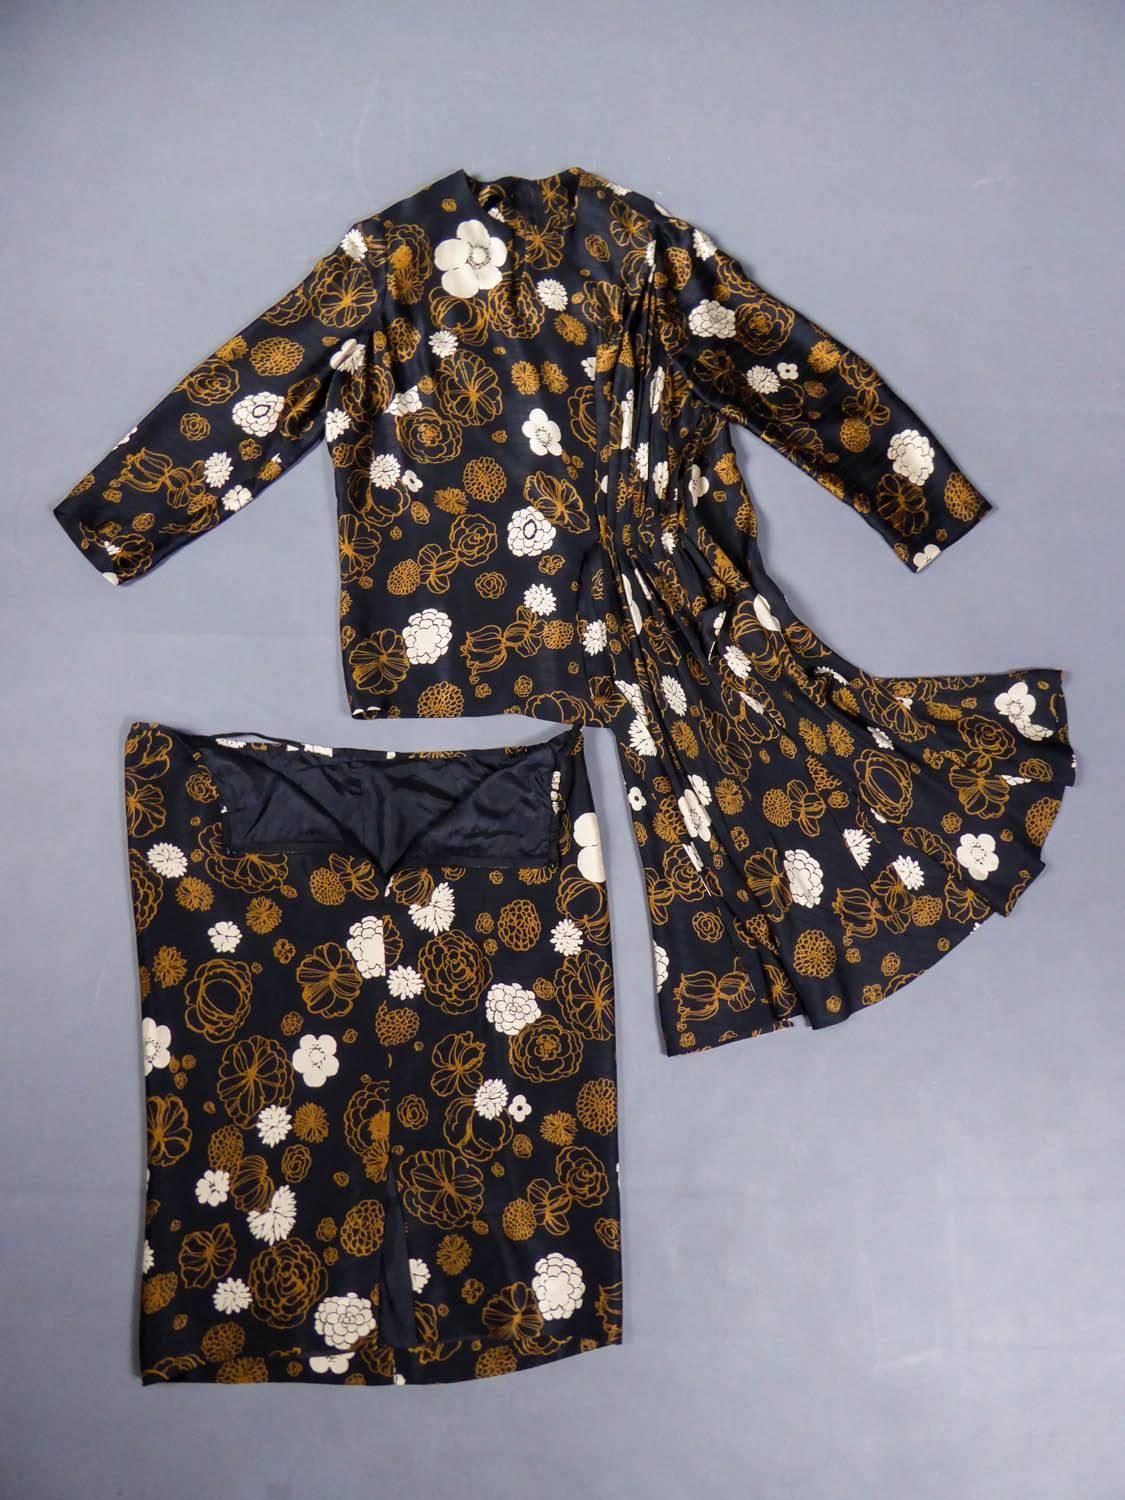 Circa 1980

France

Ensemble chemise jupe Madame Grès Haute Couture des années 80. Satin de soie noir à effet mat et brillant, imprimé de fleurs marron clair et blanches. Effet plissé asymétrique avec petite traîne sur les hanches. Chemisier à